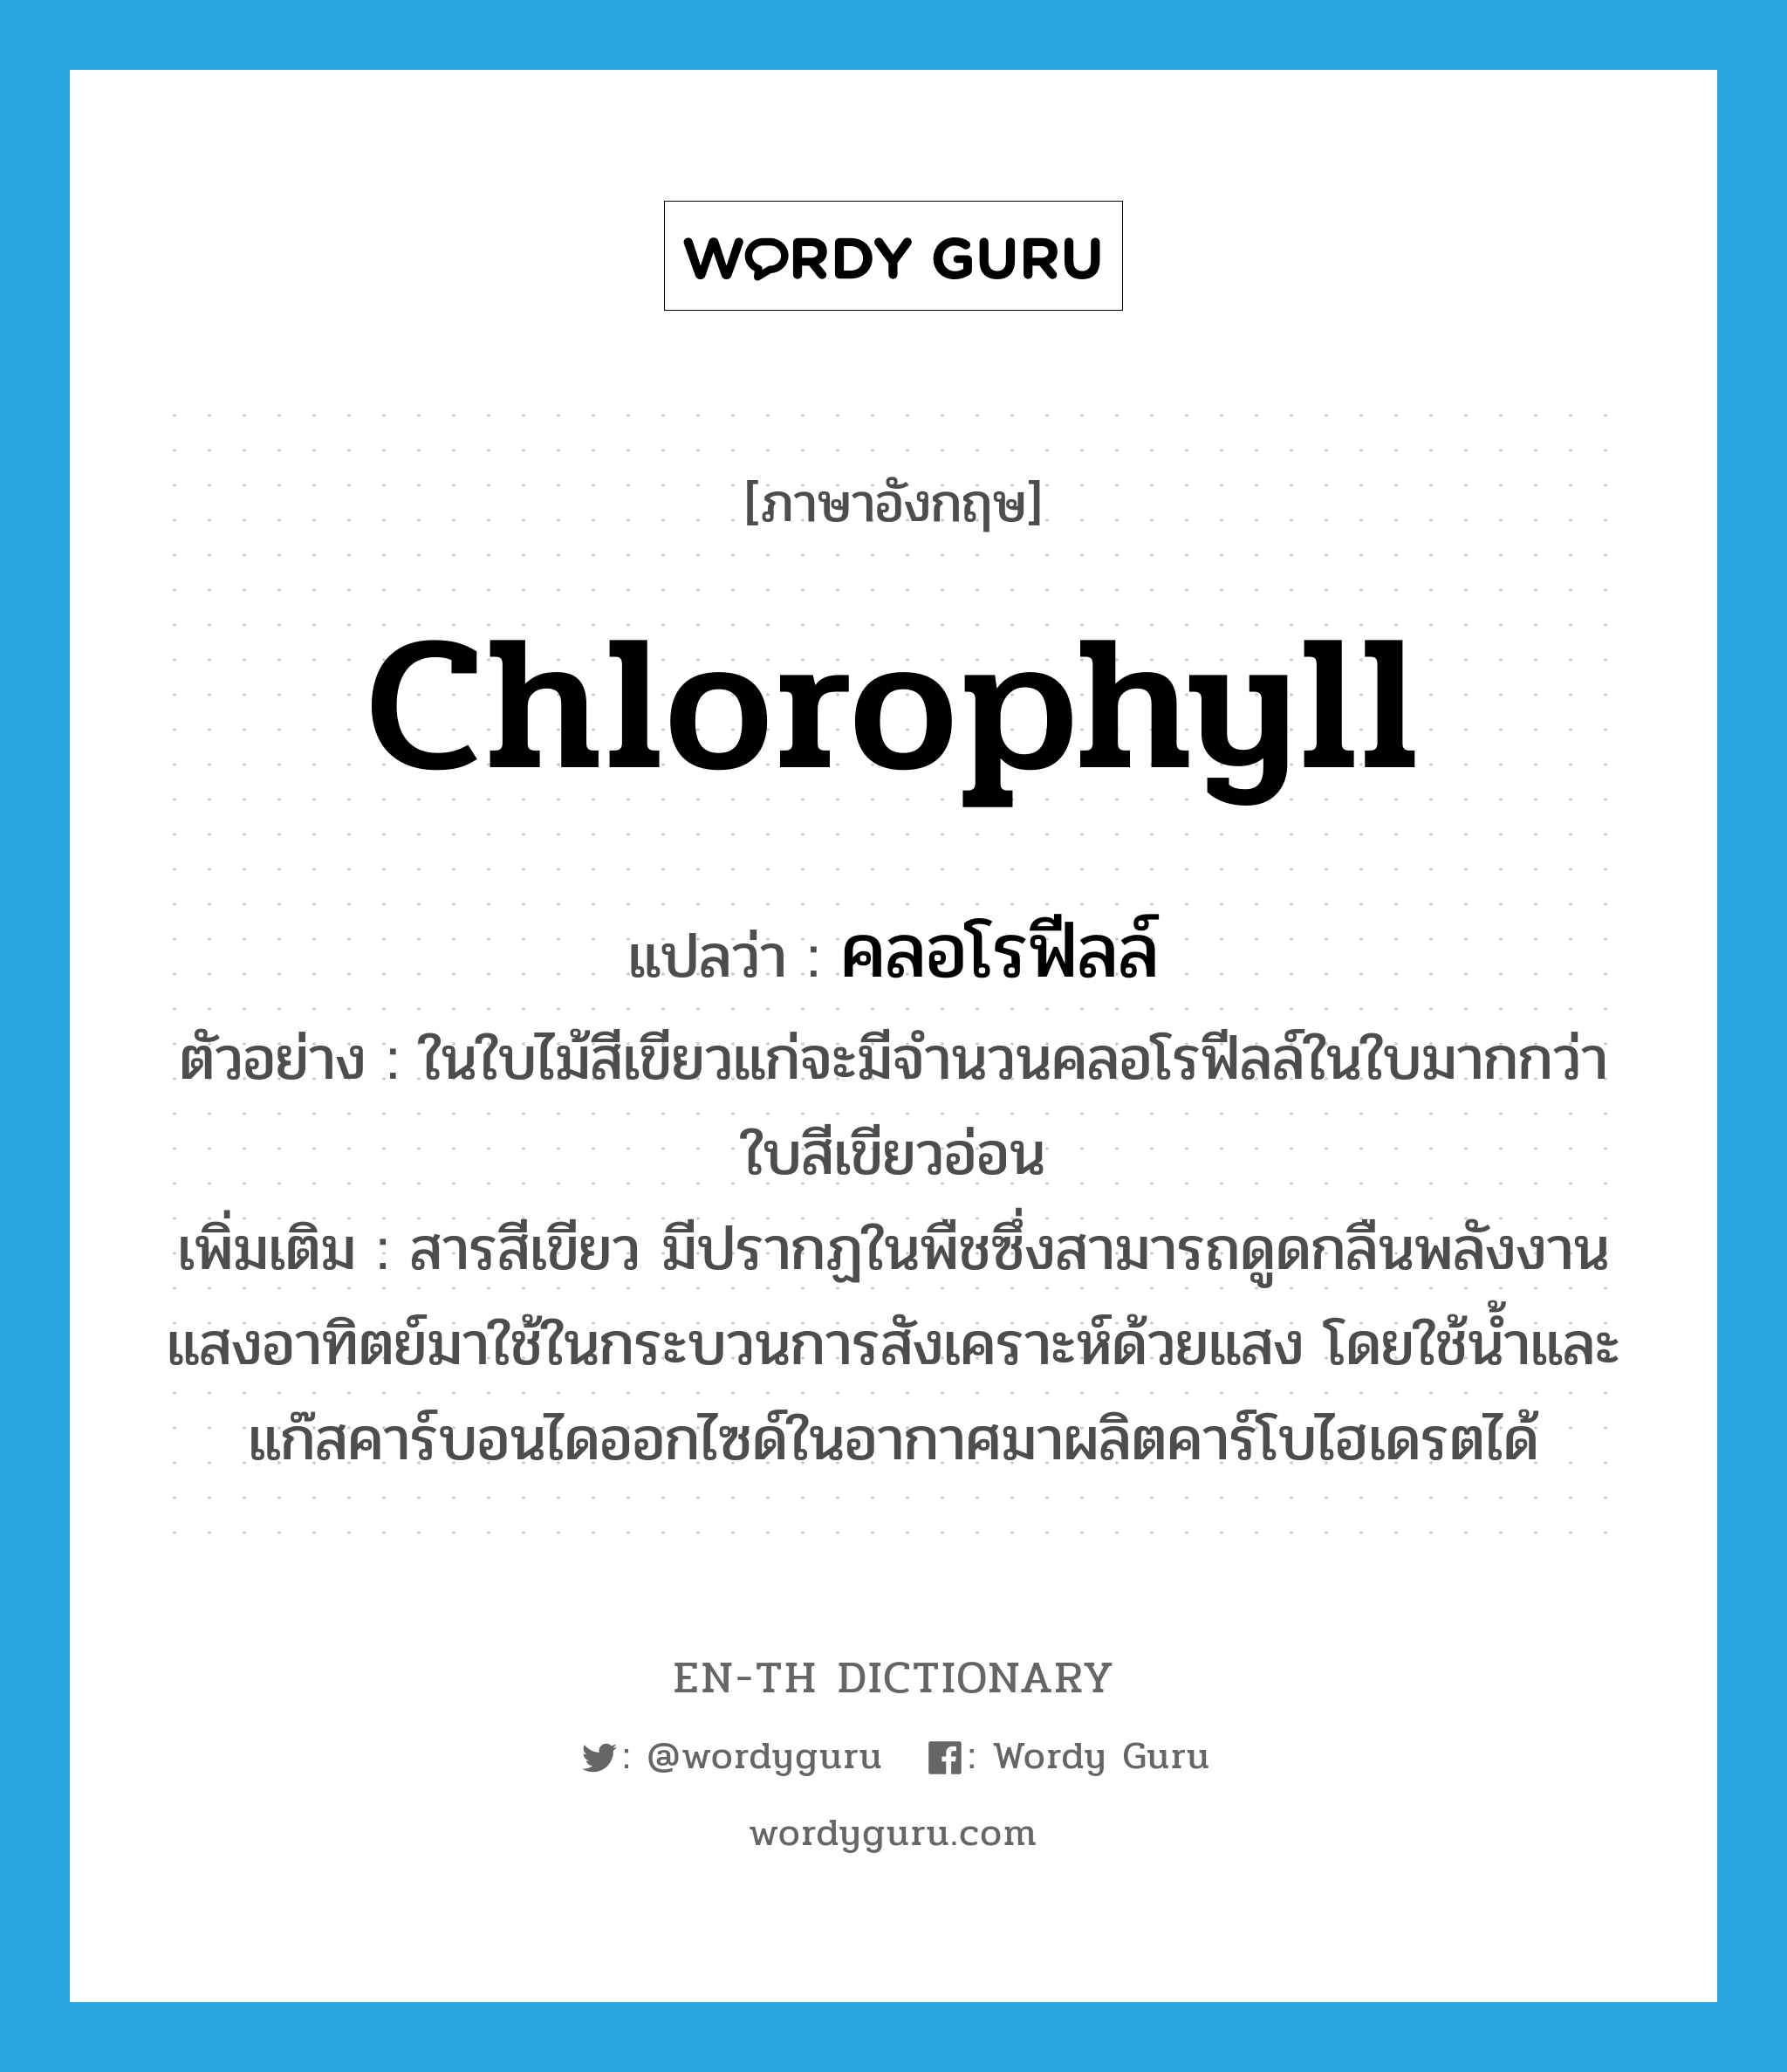 chlorophyll แปลว่า?, คำศัพท์ภาษาอังกฤษ chlorophyll แปลว่า คลอโรฟีลล์ ประเภท N ตัวอย่าง ในใบไม้สีเขียวแก่จะมีจำนวนคลอโรฟีลล์ในใบมากกว่าใบสีเขียวอ่อน เพิ่มเติม สารสีเขียว มีปรากฏในพืชซึ่งสามารถดูดกลืนพลังงานแสงอาทิตย์มาใช้ในกระบวนการสังเคราะห์ด้วยแสง โดยใช้น้ำและแก๊สคาร์บอนไดออกไซด์ในอากาศมาผลิตคาร์โบไฮเดรตได้ หมวด N